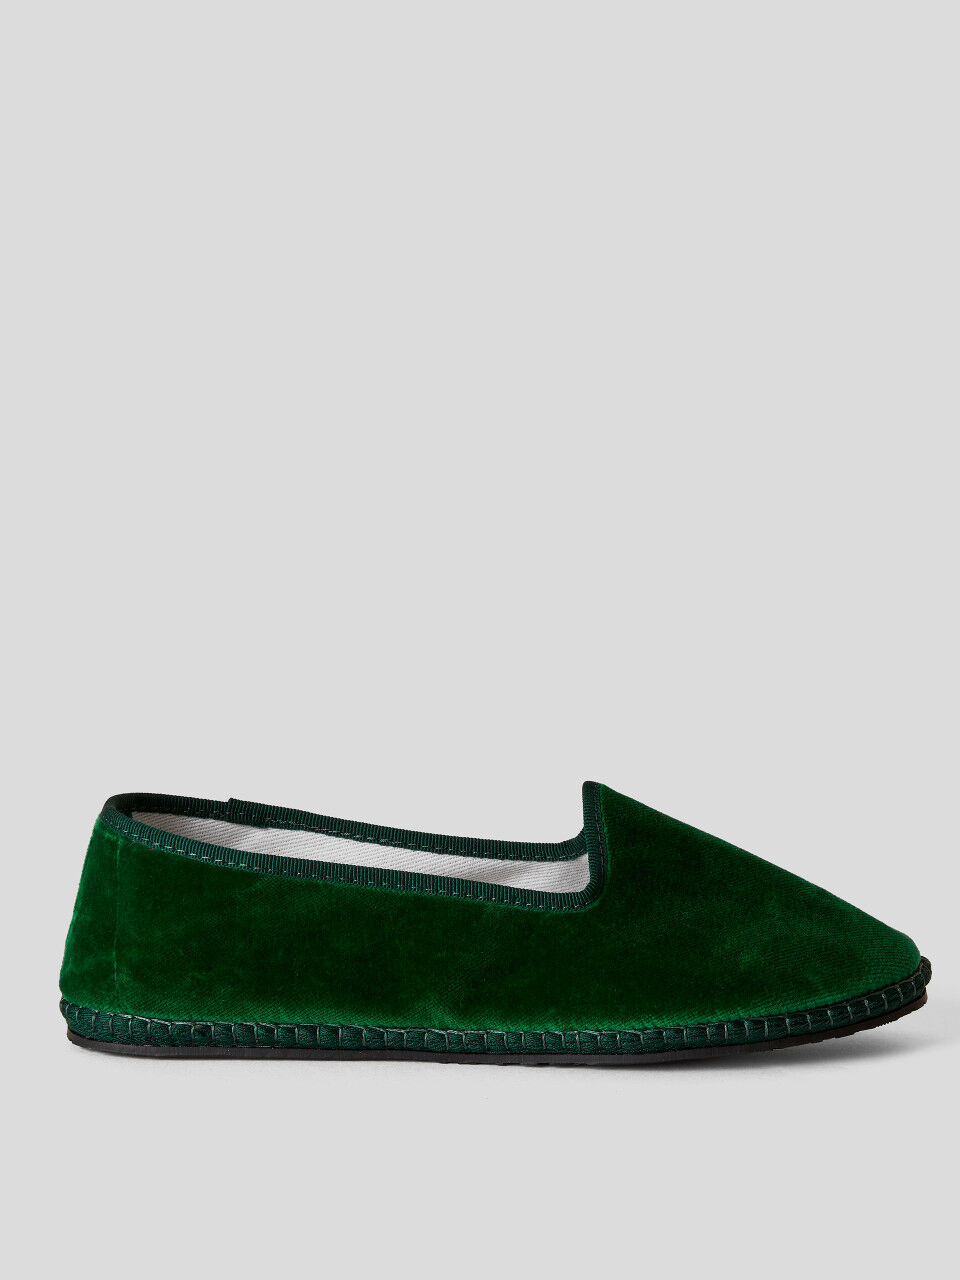 Παπούτσια Friulane πράσινο σκούρο από βελούδο